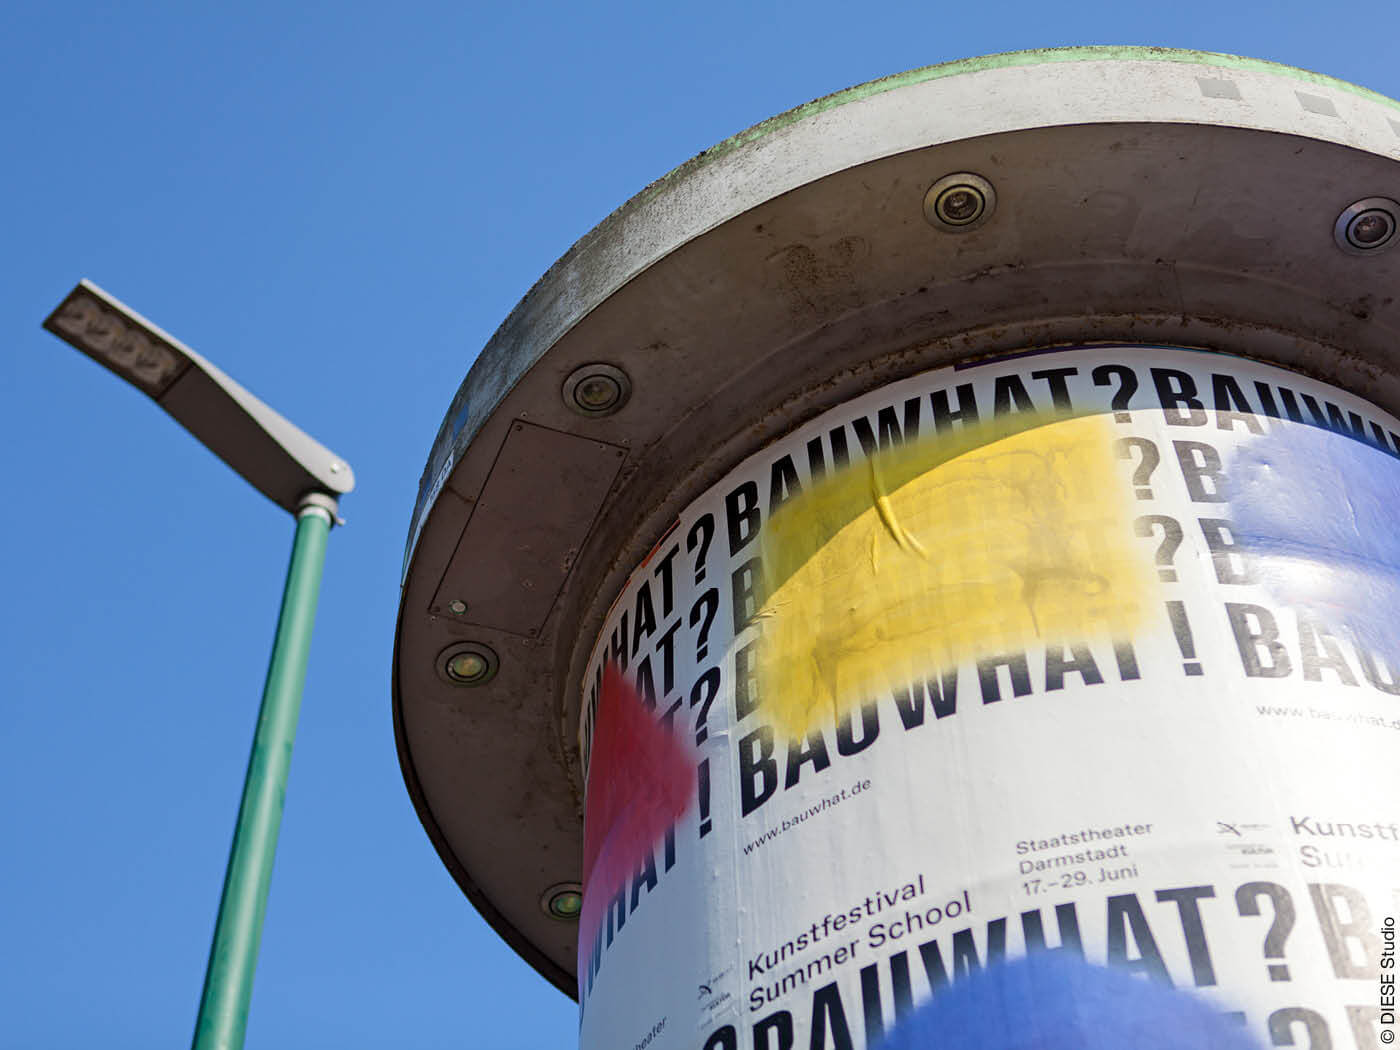 Plakat an einer Litfaßsäule zum Bauhaus-Festival Darmstadt